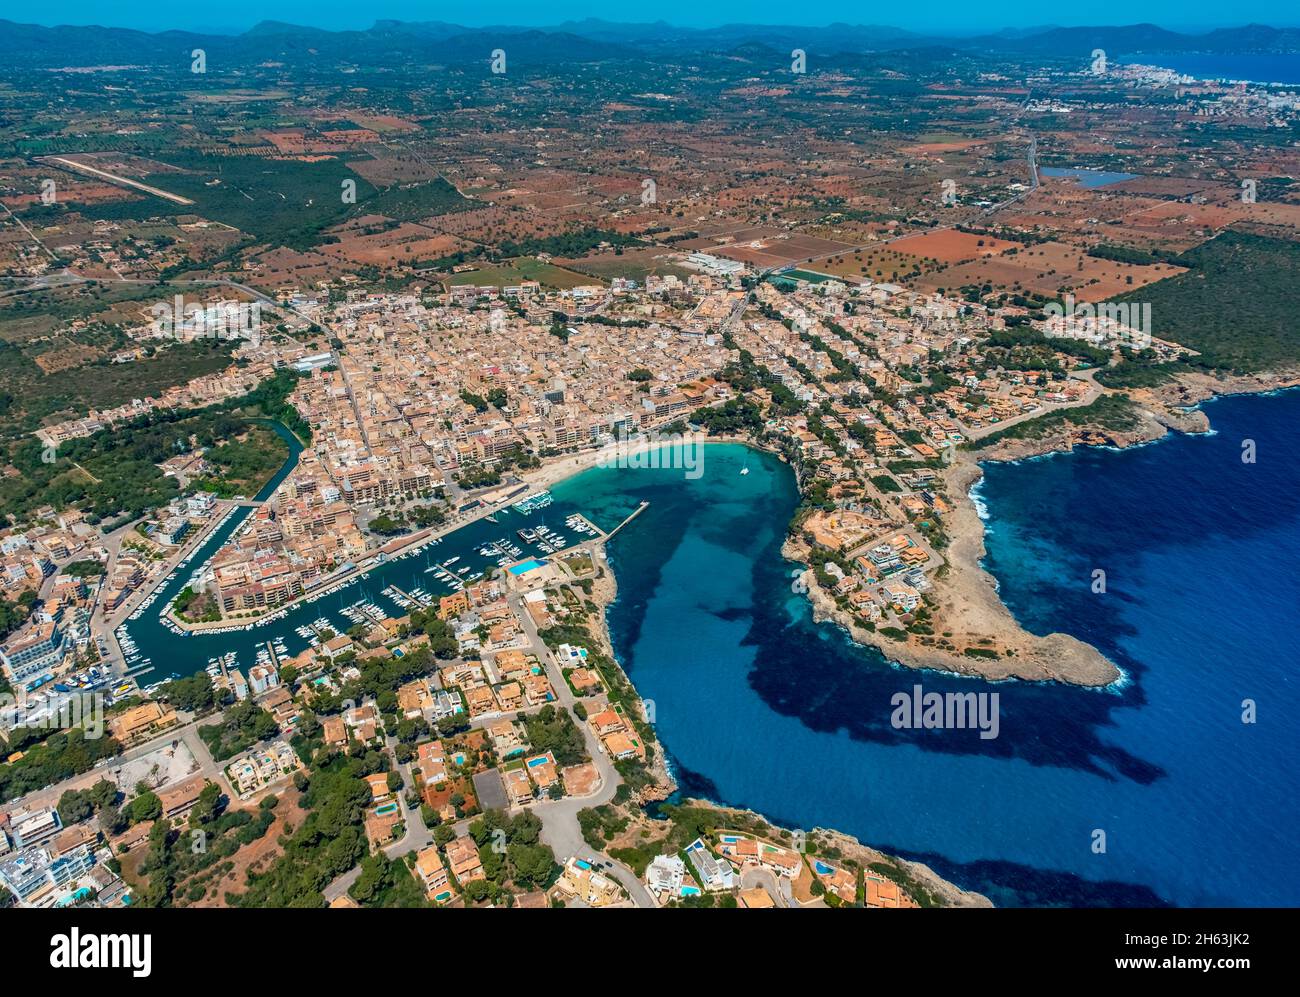 vue aérienne, plage et port de plaisance de porto cristo,manacor,mallorca,europe,iles baléares,espagne Banque D'Images